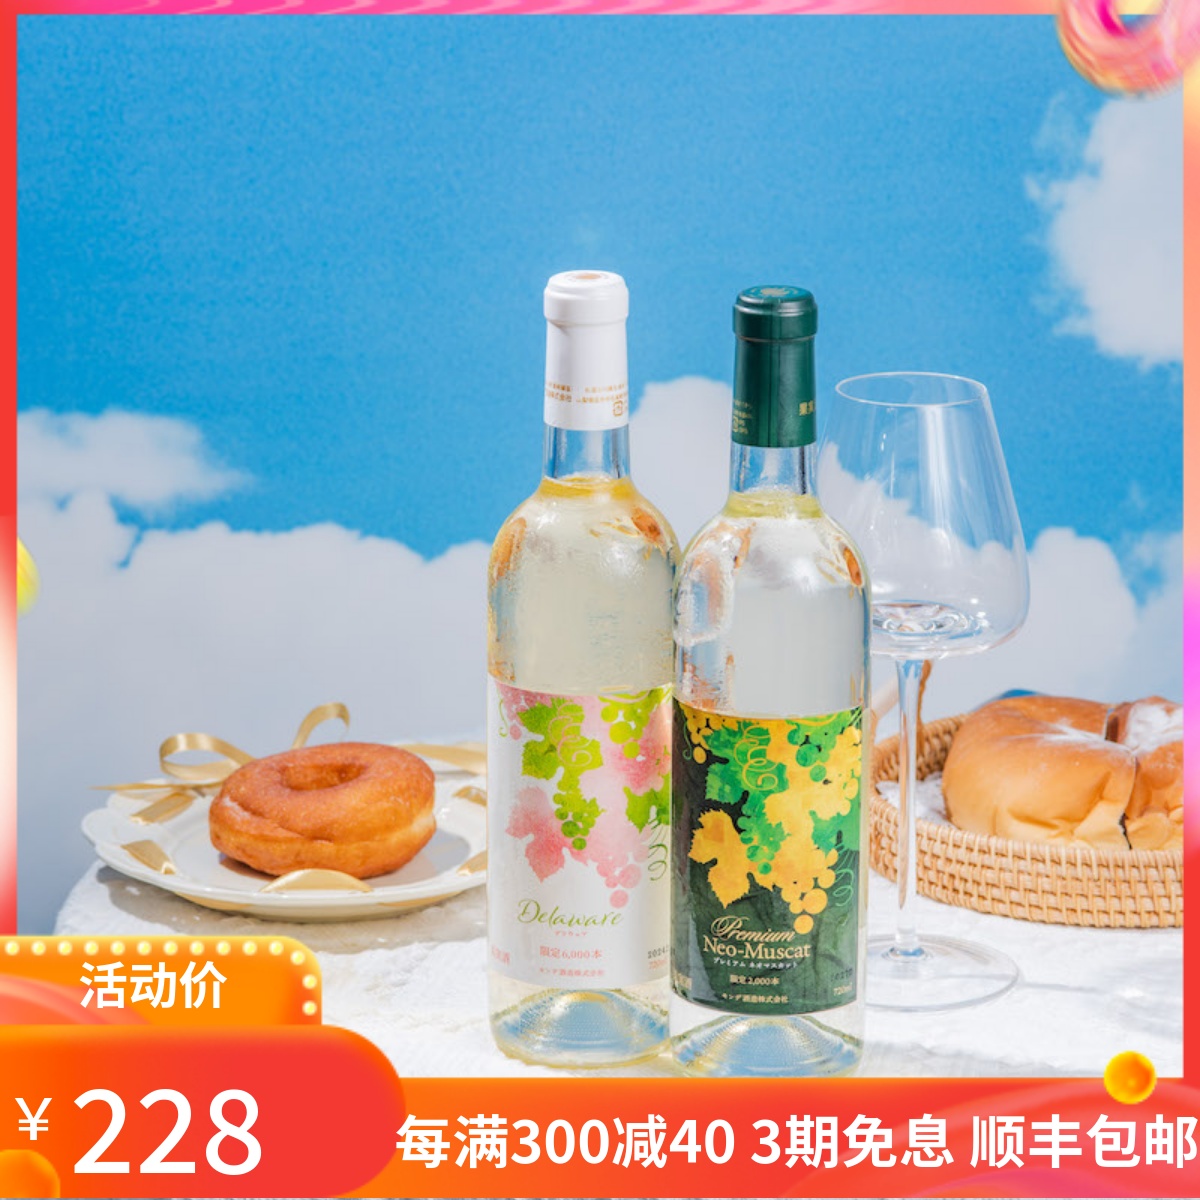 日本进口梦的酒造新玫瑰香/特拉华半甜白葡萄酒 限量品 稀有品种